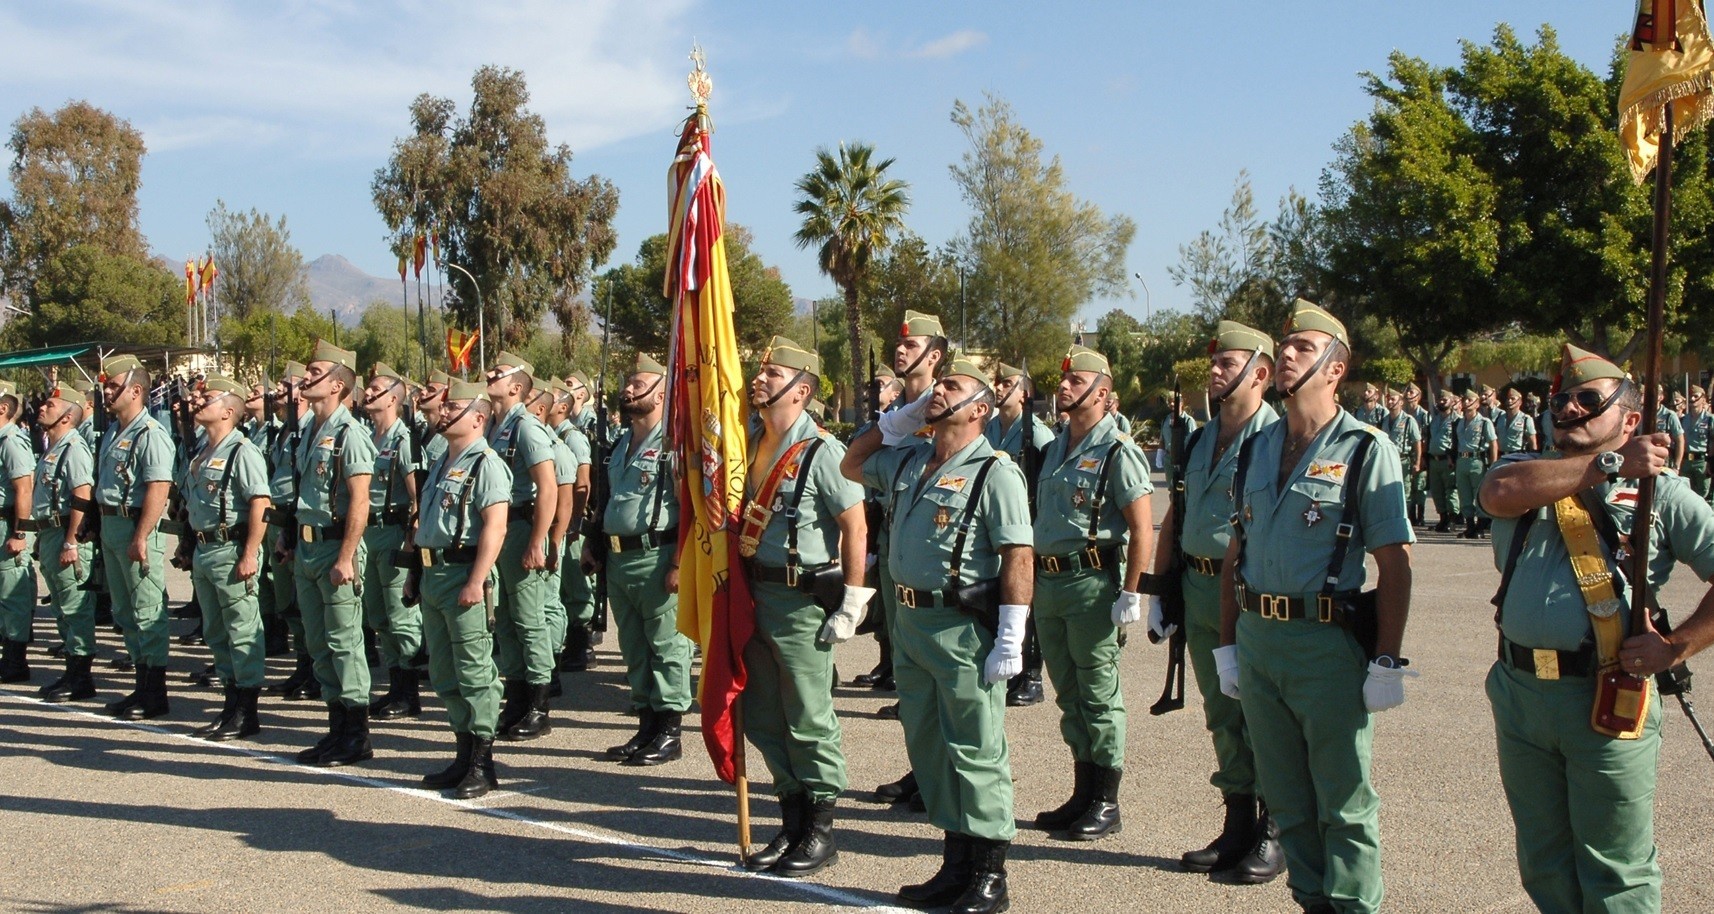 Legionarios y regulares desfilarán en Melilla para homenajear a los caídos  en el desastre de Annual